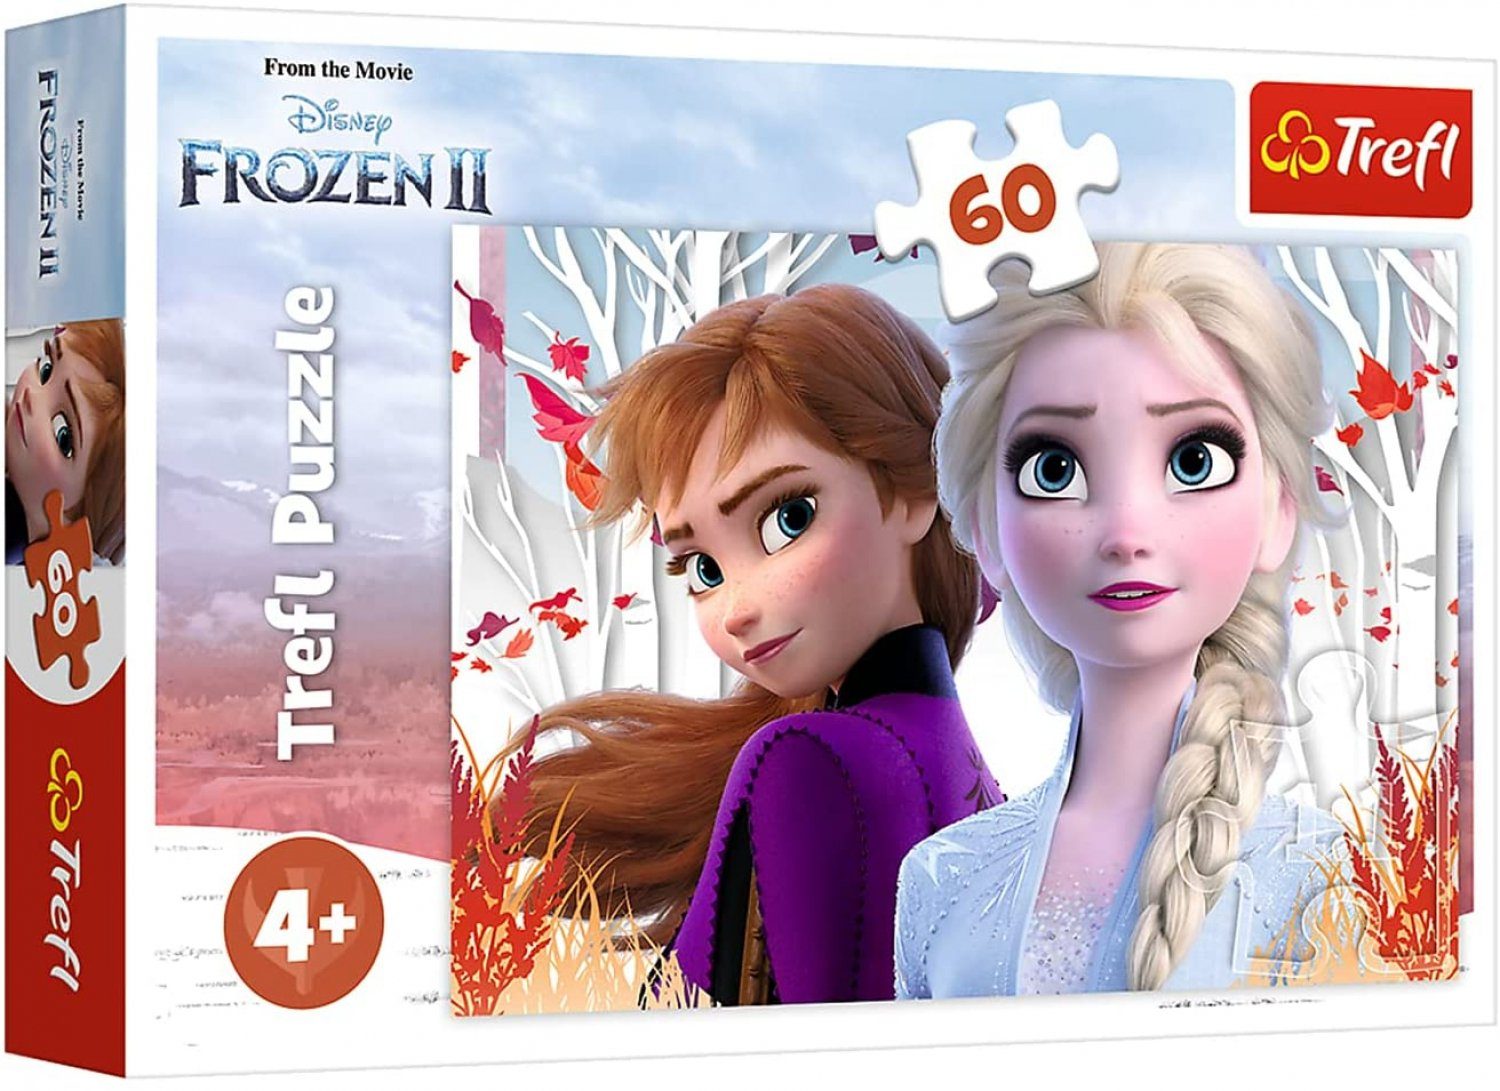 Trefl Puzzle Trefl TR17333 Puzzle Zauberhafte Welt von Elsa und Anna, Disney Frozen 2, Puzzleteile